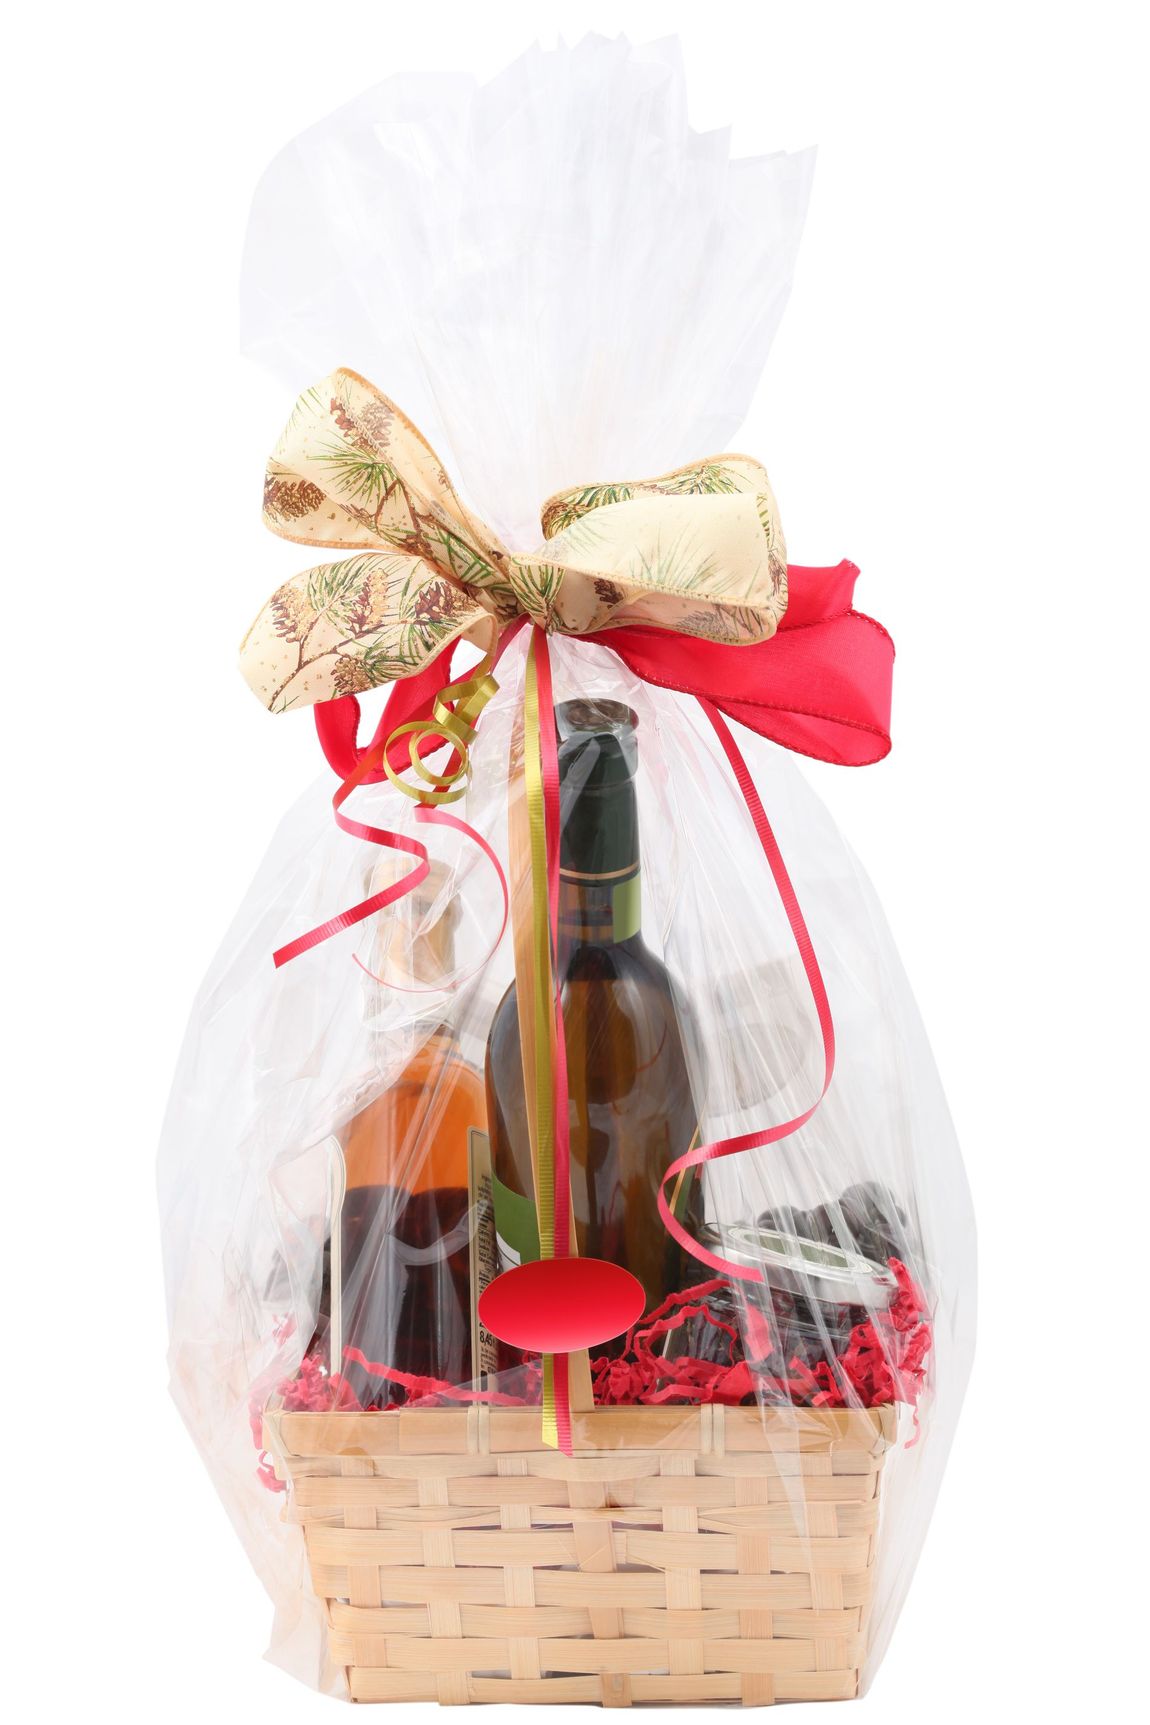 Cestino regalo con prodotti tipici e vini calabresi pregiati